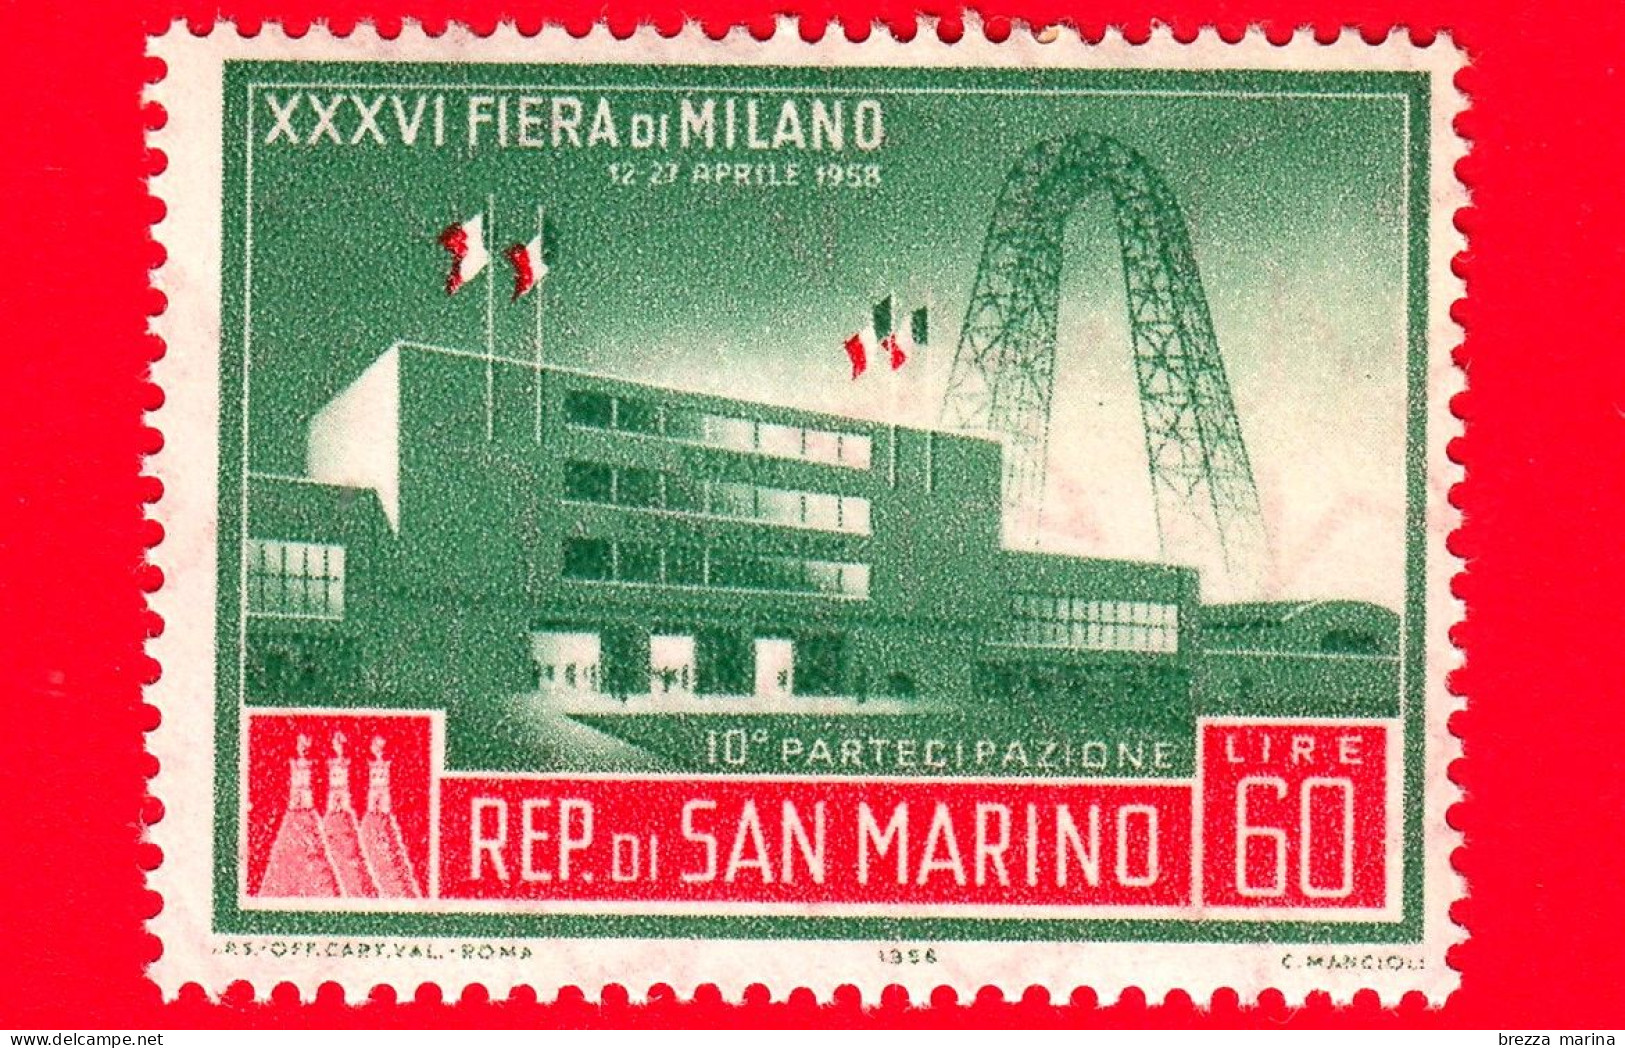 Nuovo - MNH - SAN MARINO - 1958 - XXXVI Fiera Di Milano - 10 Partecipazione - 60 - Nuevos